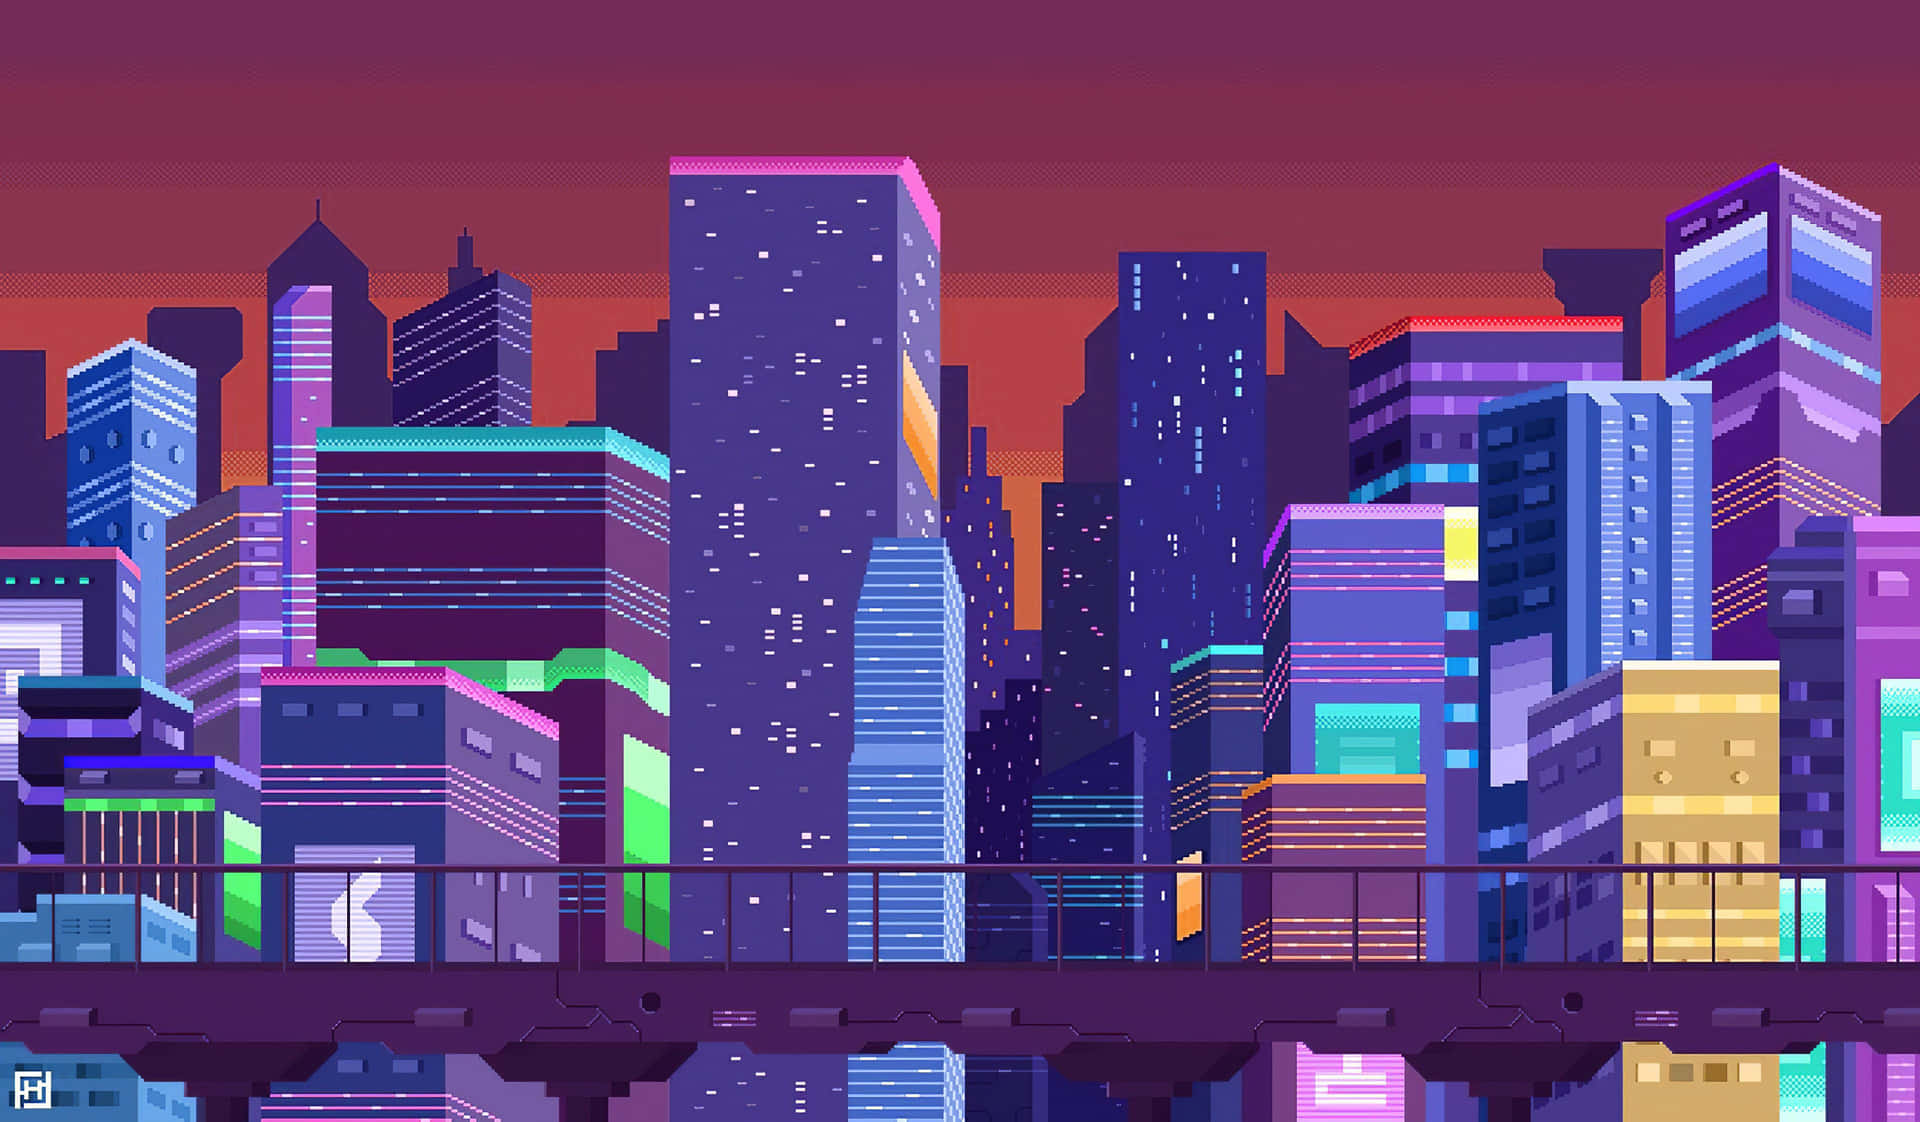 Paisagemnoturna Da Cidade Em Arte De Pixel. Papel de Parede